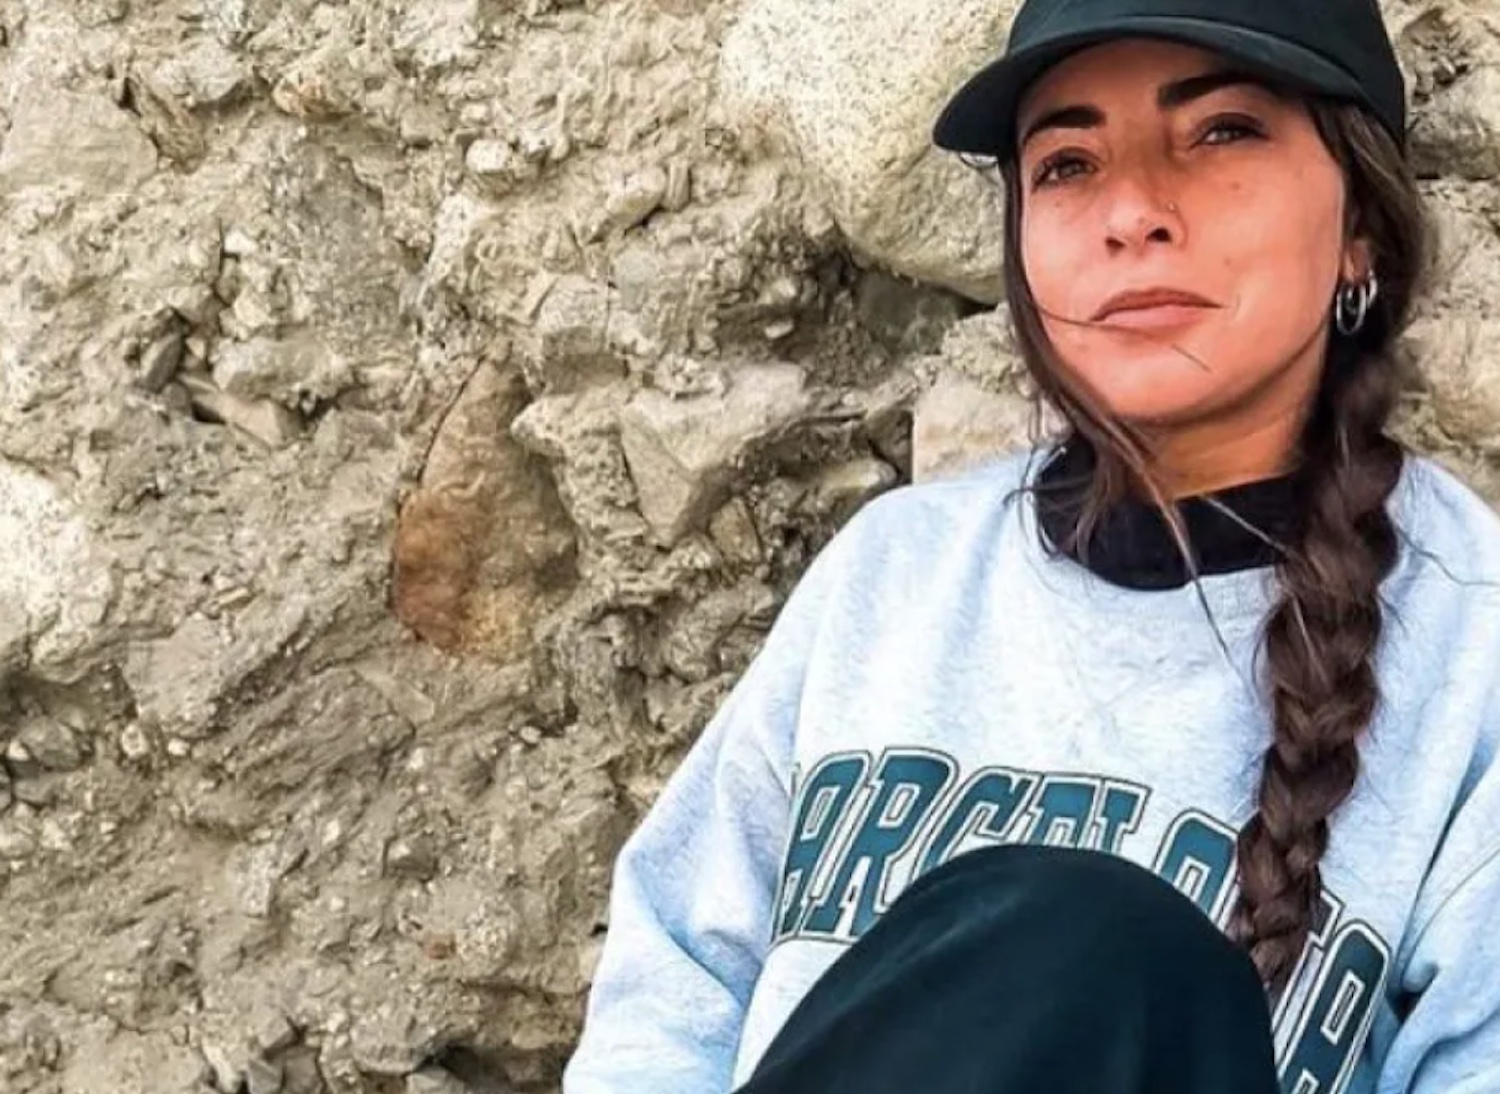 Alessia Piperno e la solidarietà dei nomadi digitali: «Poteva succedere a chiunque» – Le voci